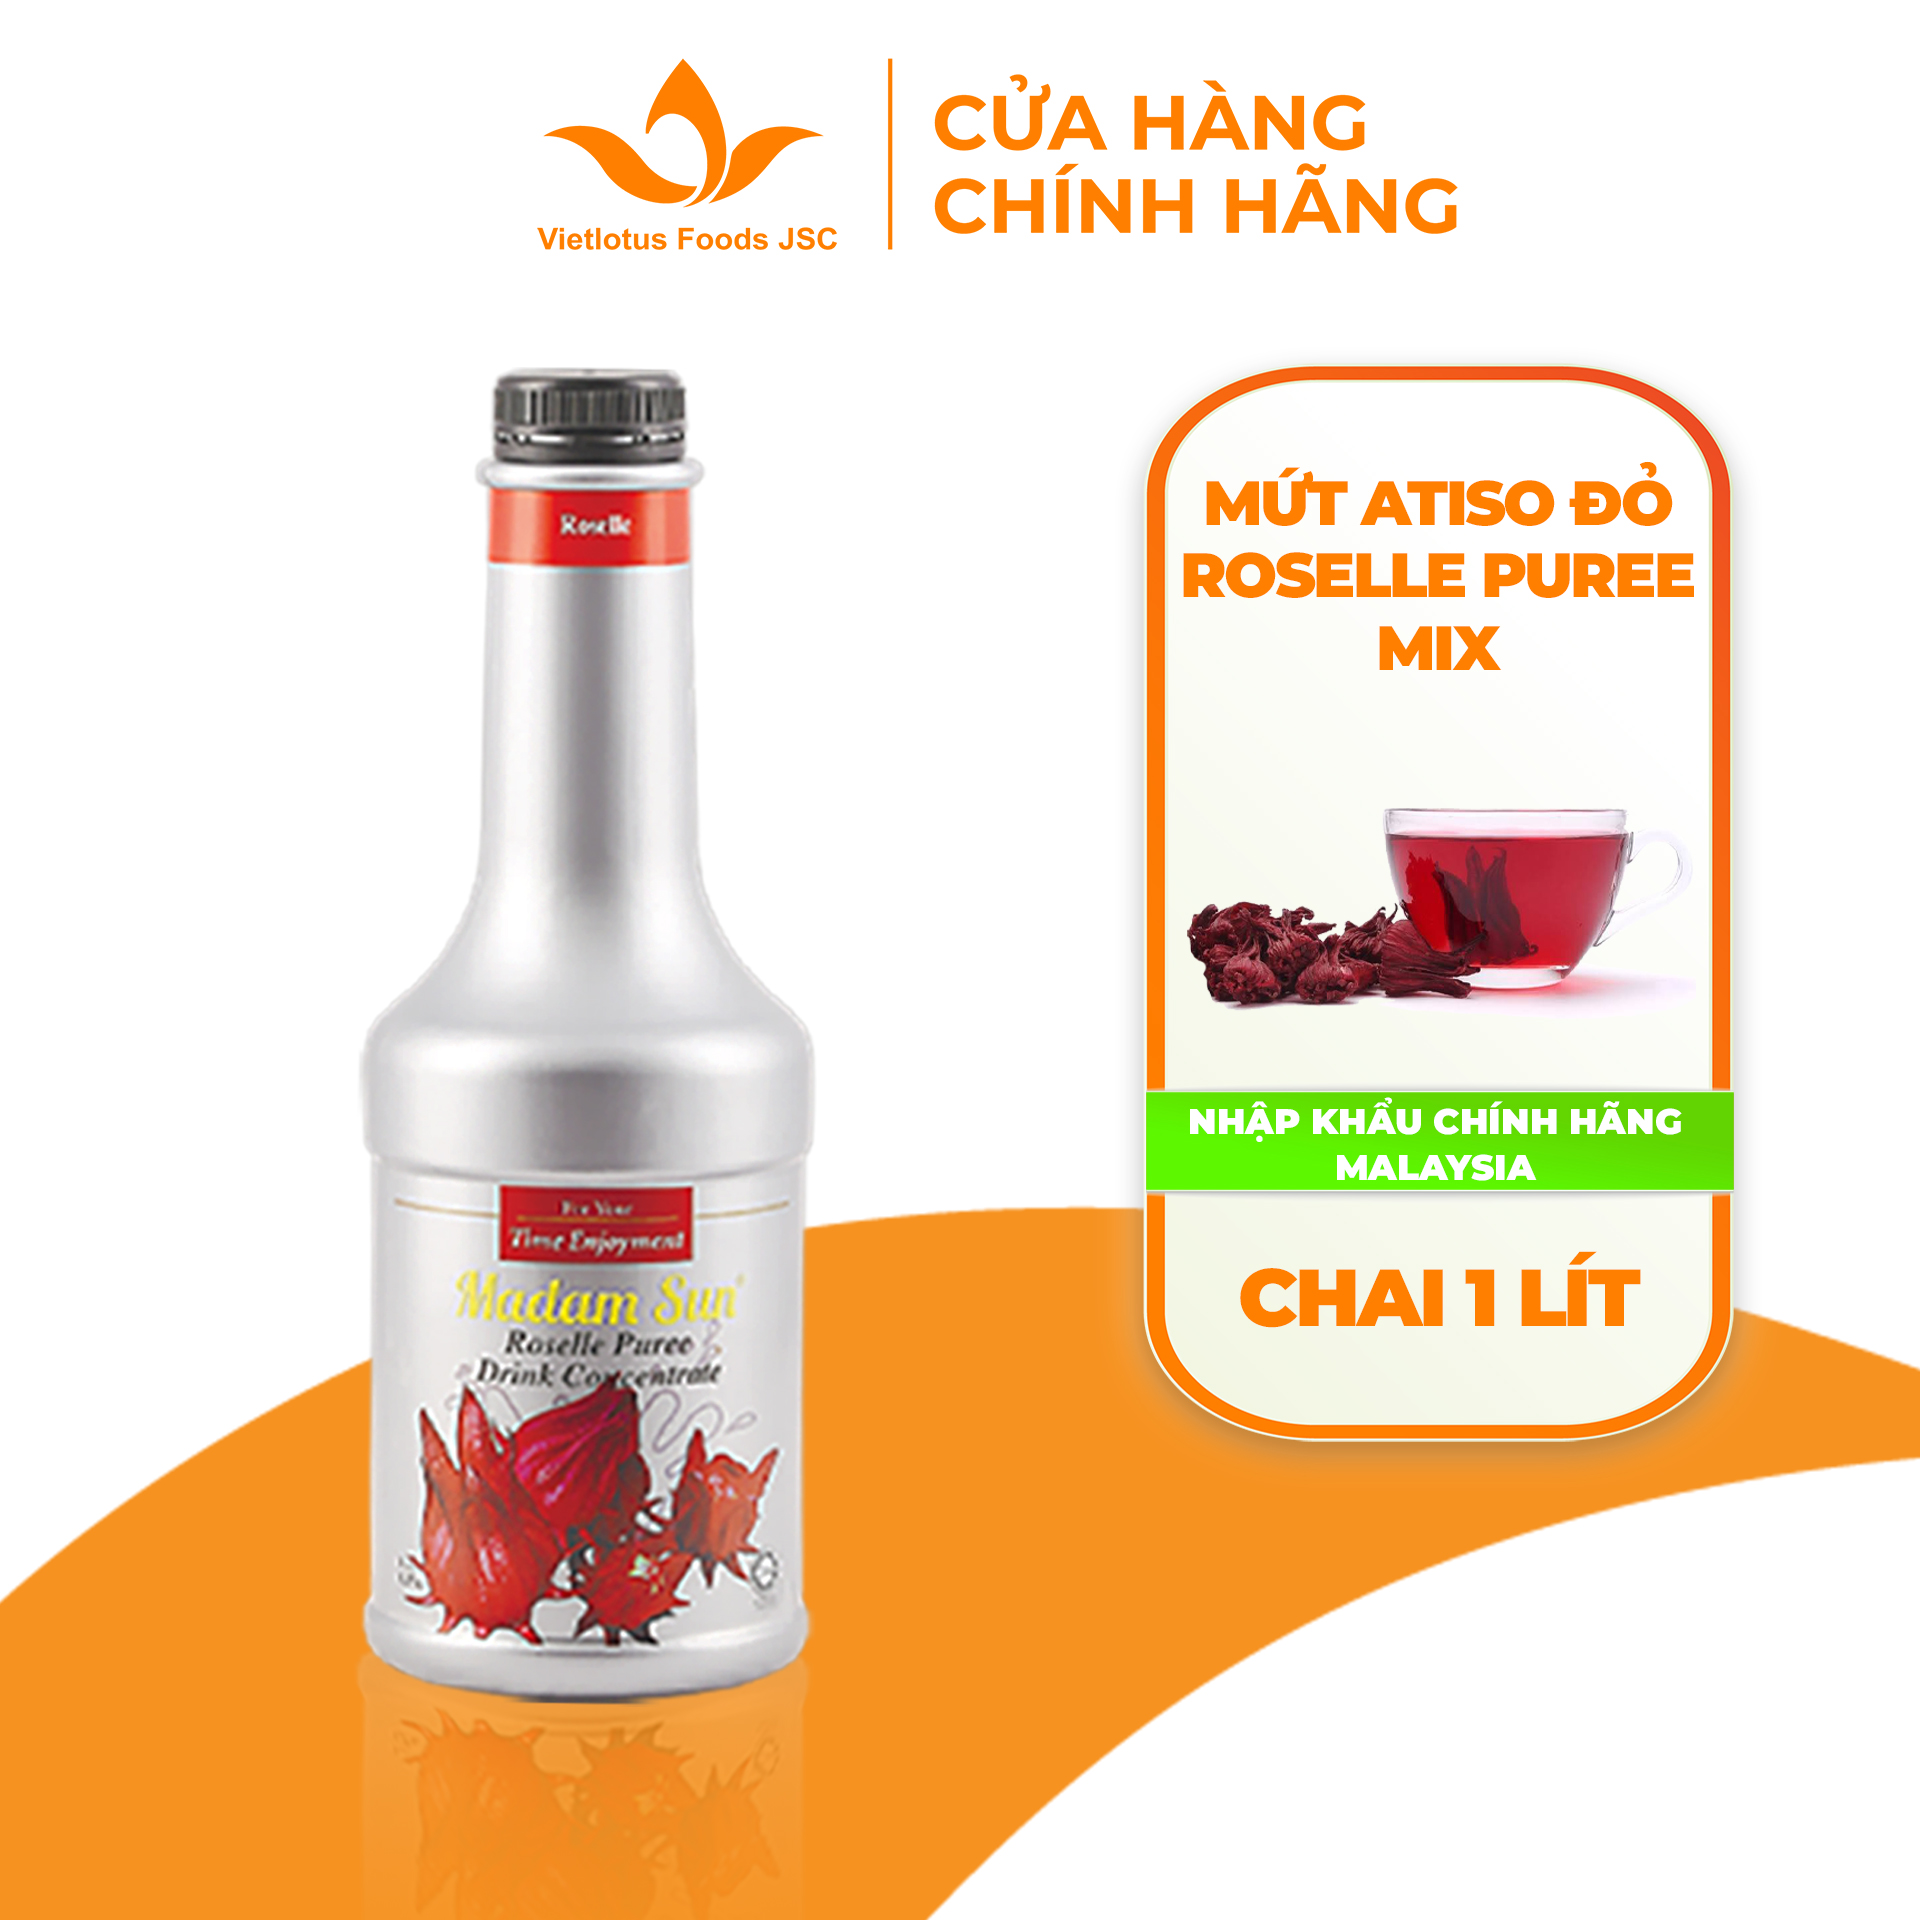 Mứt trái cây pha chế Madamsun vị Atiso đỏ (Roselle Puree Mix) chai 1L - Hàng nhập khẩu Malaysia